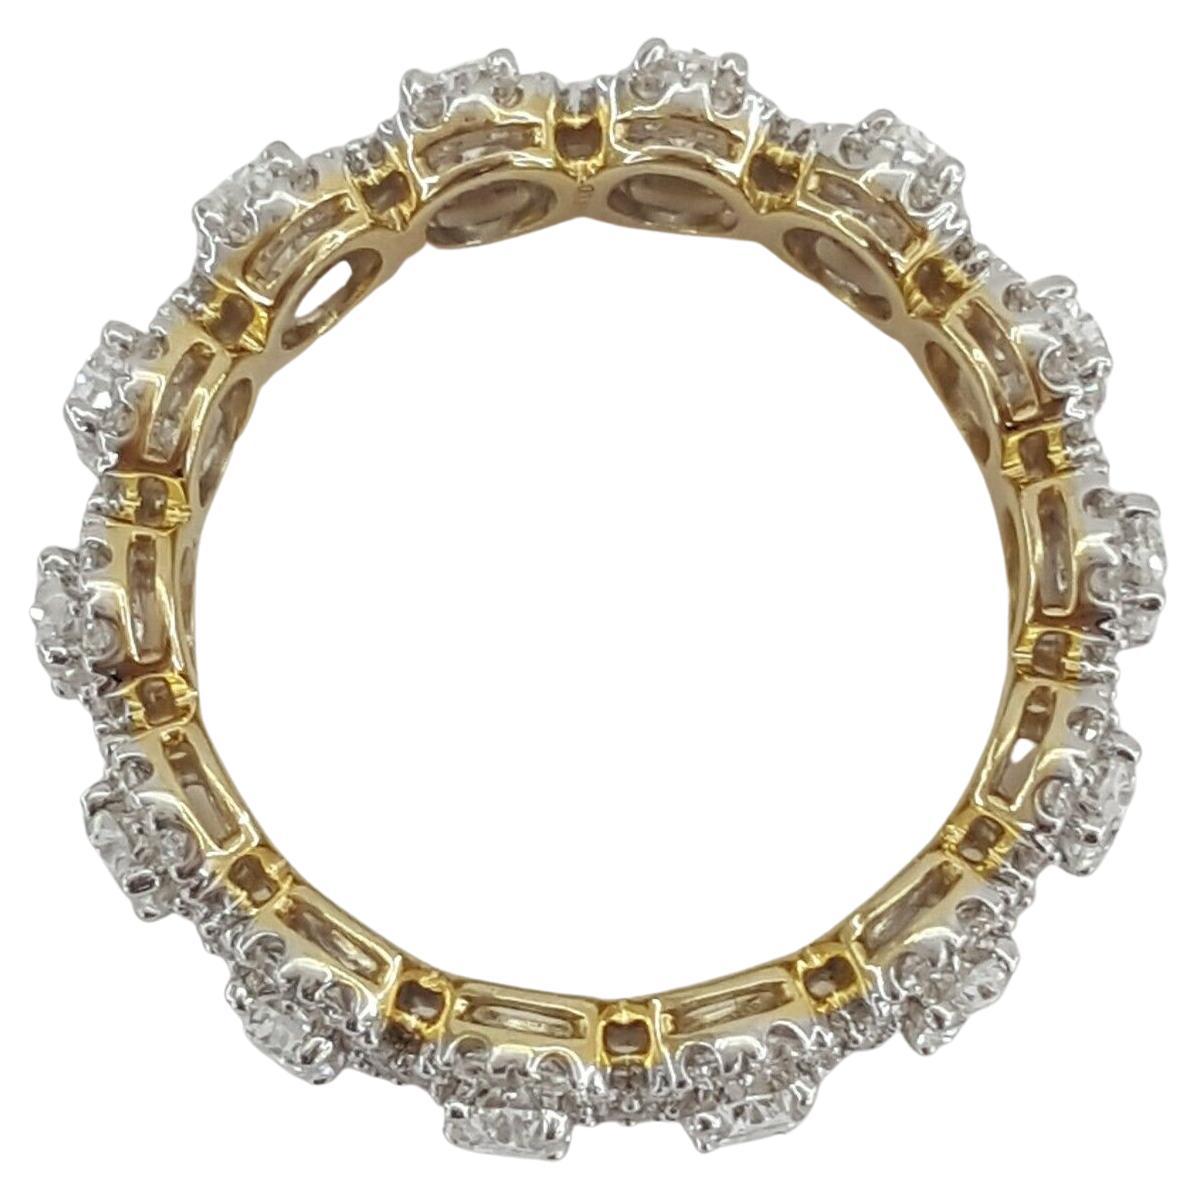 Ein exquisiter Ehering aus Gelbgold mit ovalem Brillantschliff und Halo-Diamanten in vollem Kreis.

Der Ring wiegt 4 Gramm, Größe 7, es gibt 14 natürliche Diamanten im ovalen Brillantschliff mit einem Gesamtgewicht von ca. 1,9 ct.